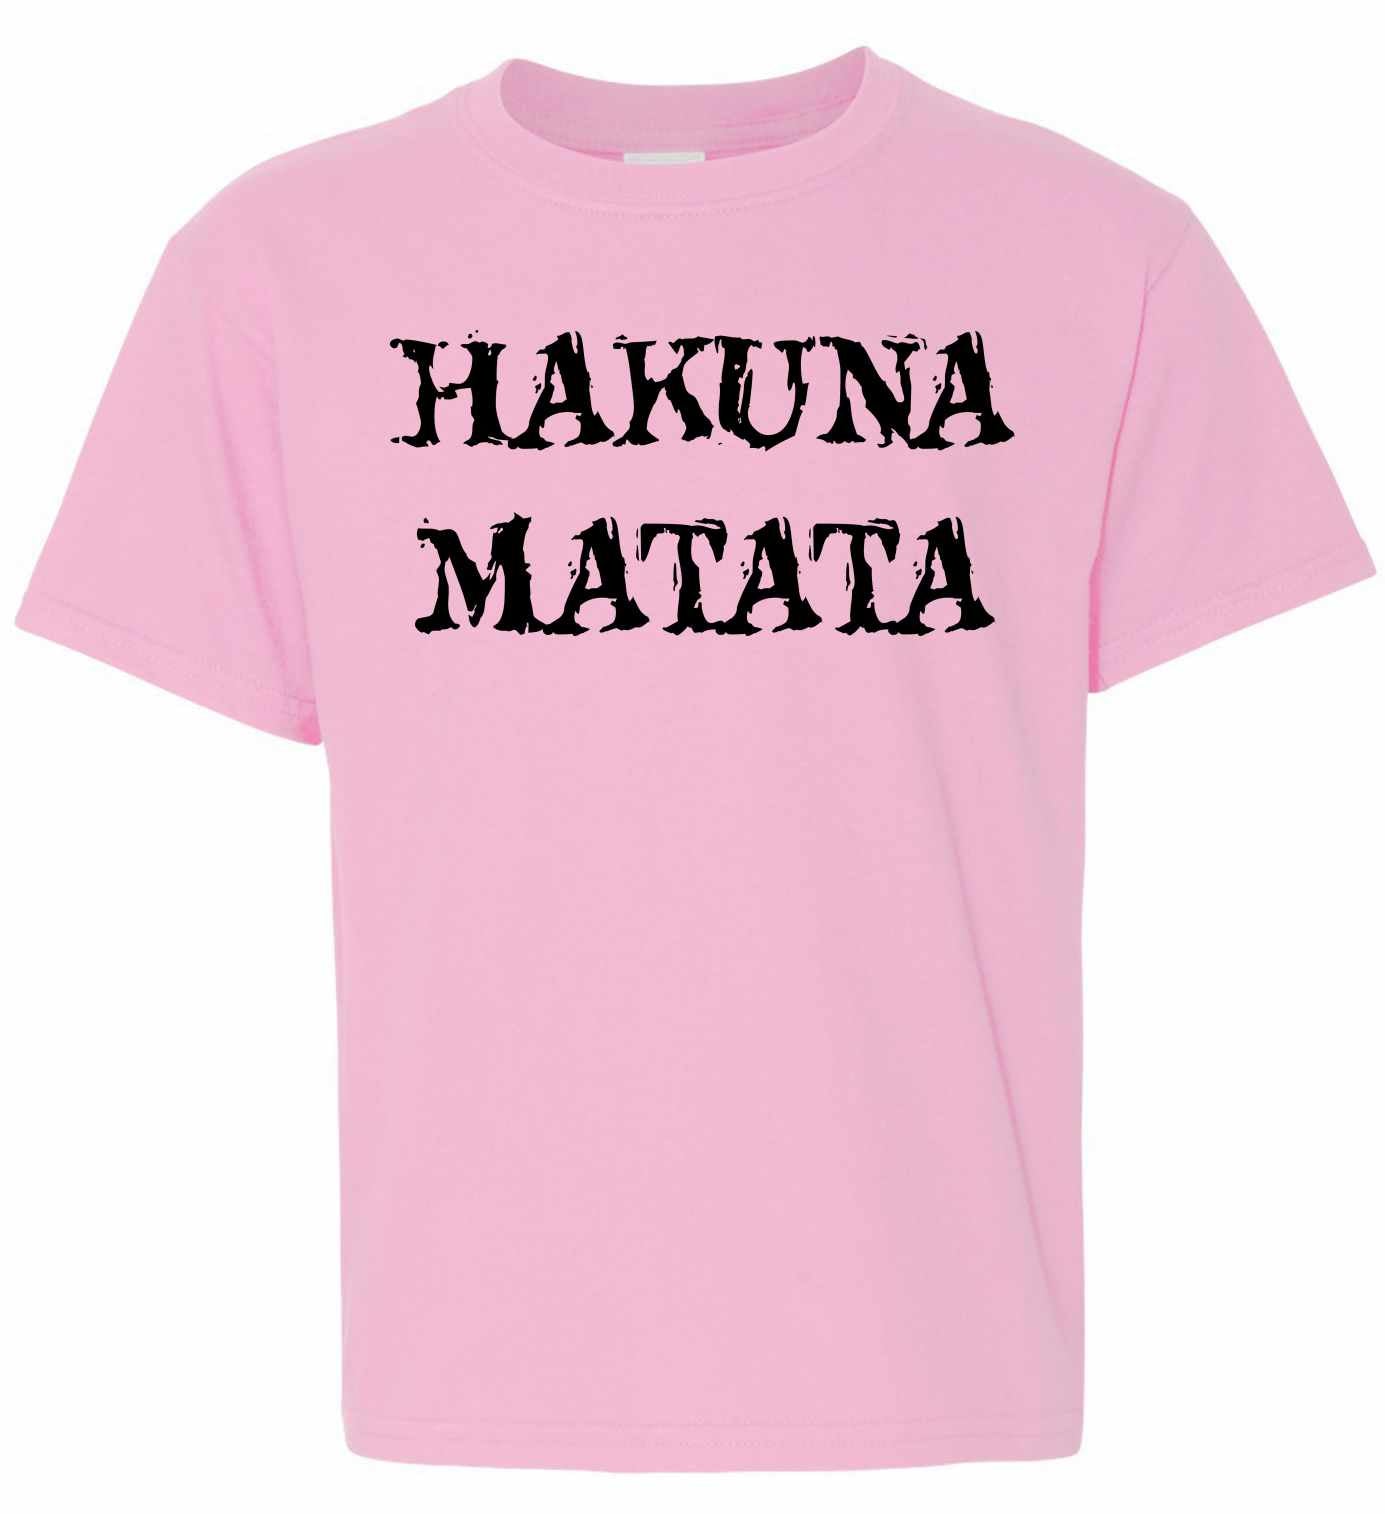 HAKUNA MATATA on Kids T-Shirt (#903-201)